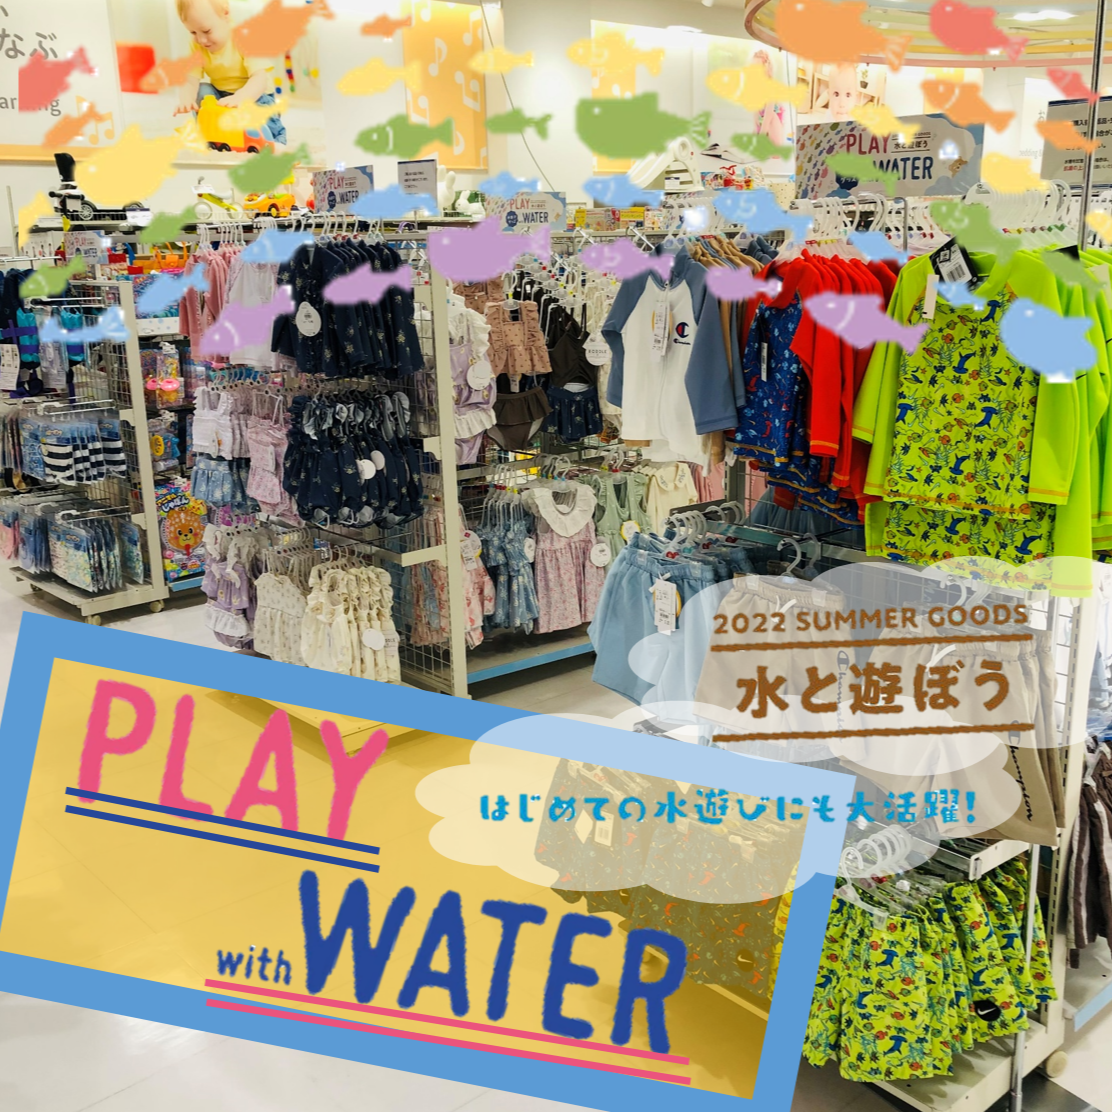 ☆暑い夏をかわいいウェアで楽しく過ごそう☆
プールや水着新作販売中！